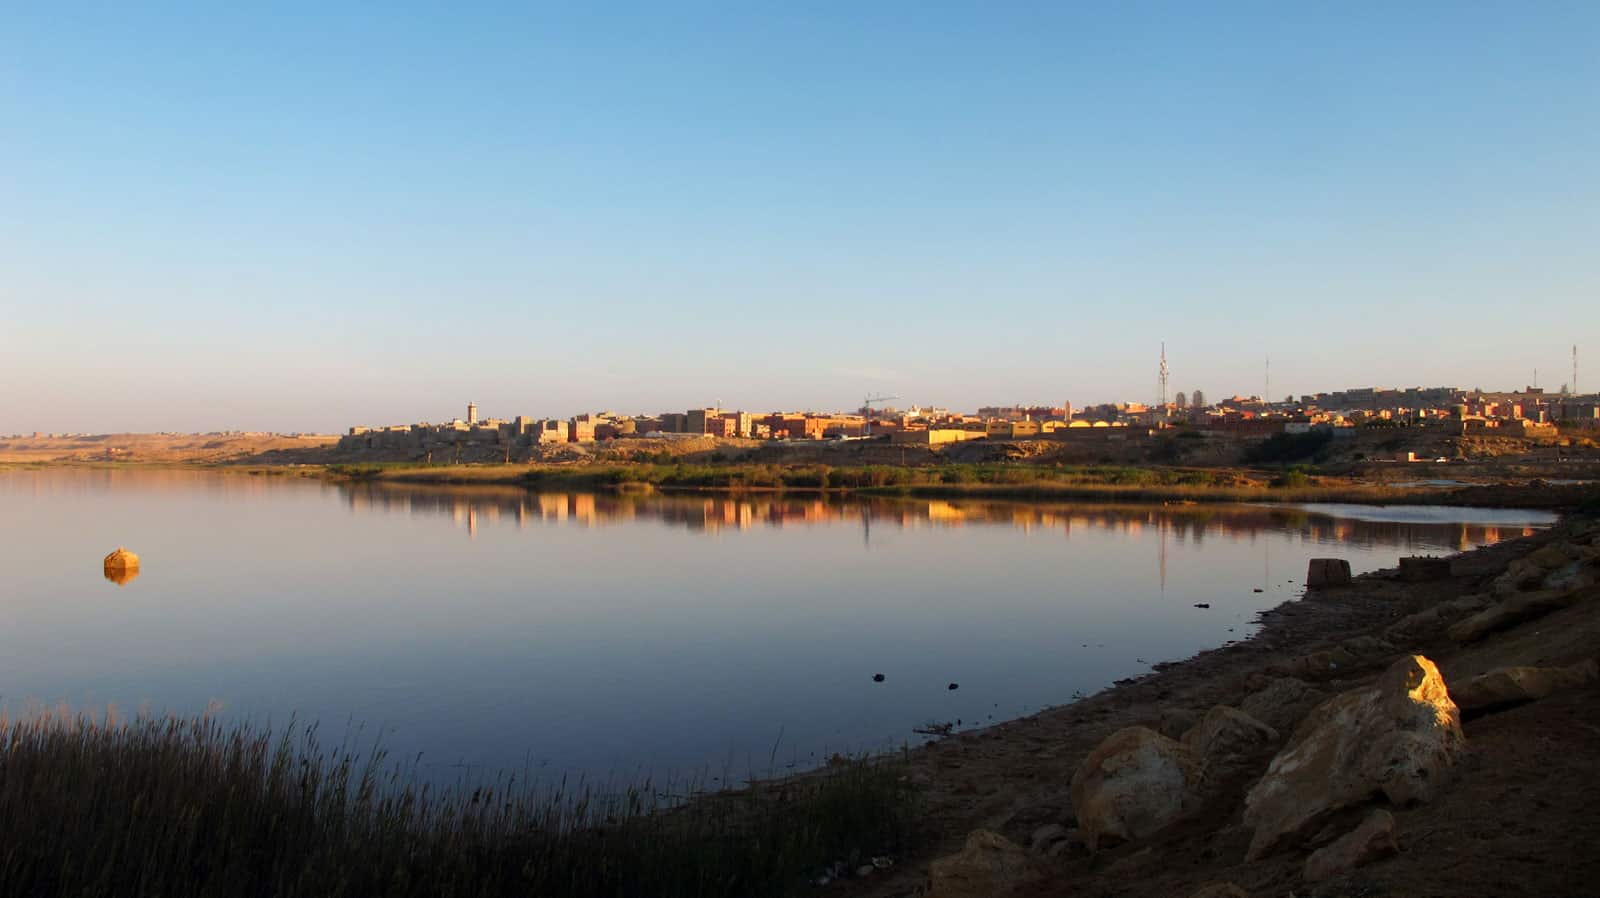 阿雍的河边。在这里可以看到很美丽的日落。